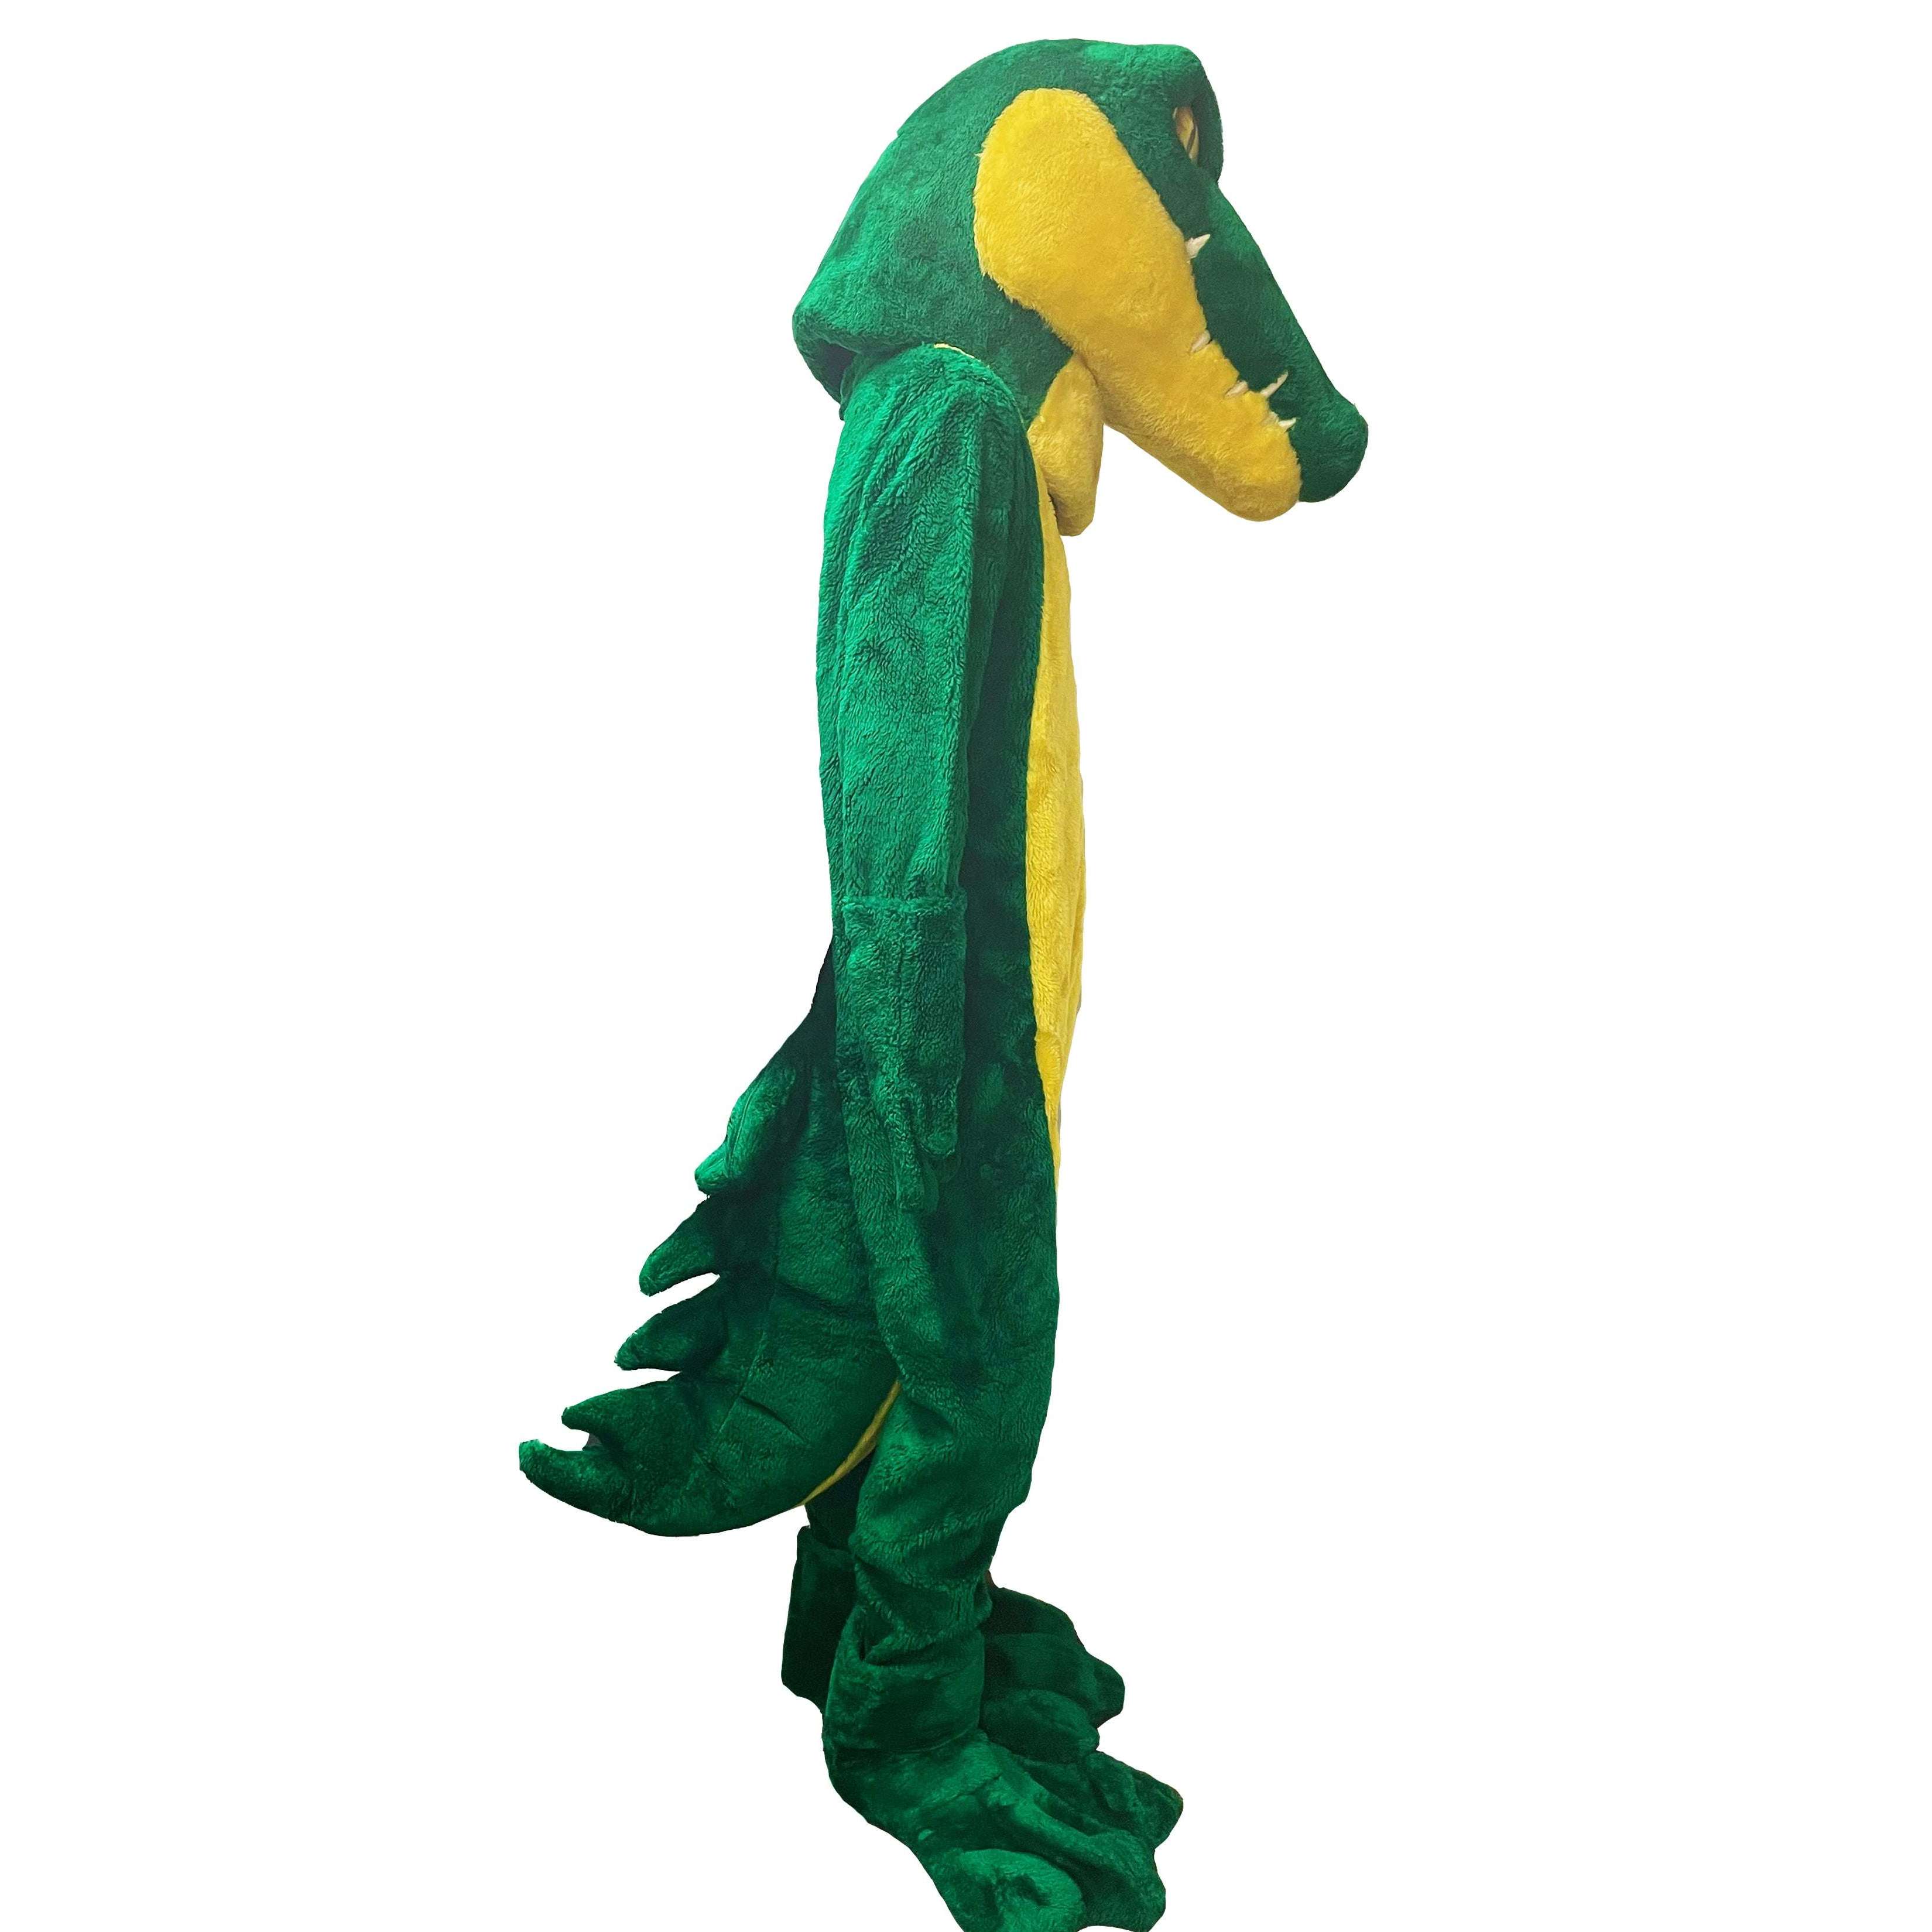 Alligator Mascot